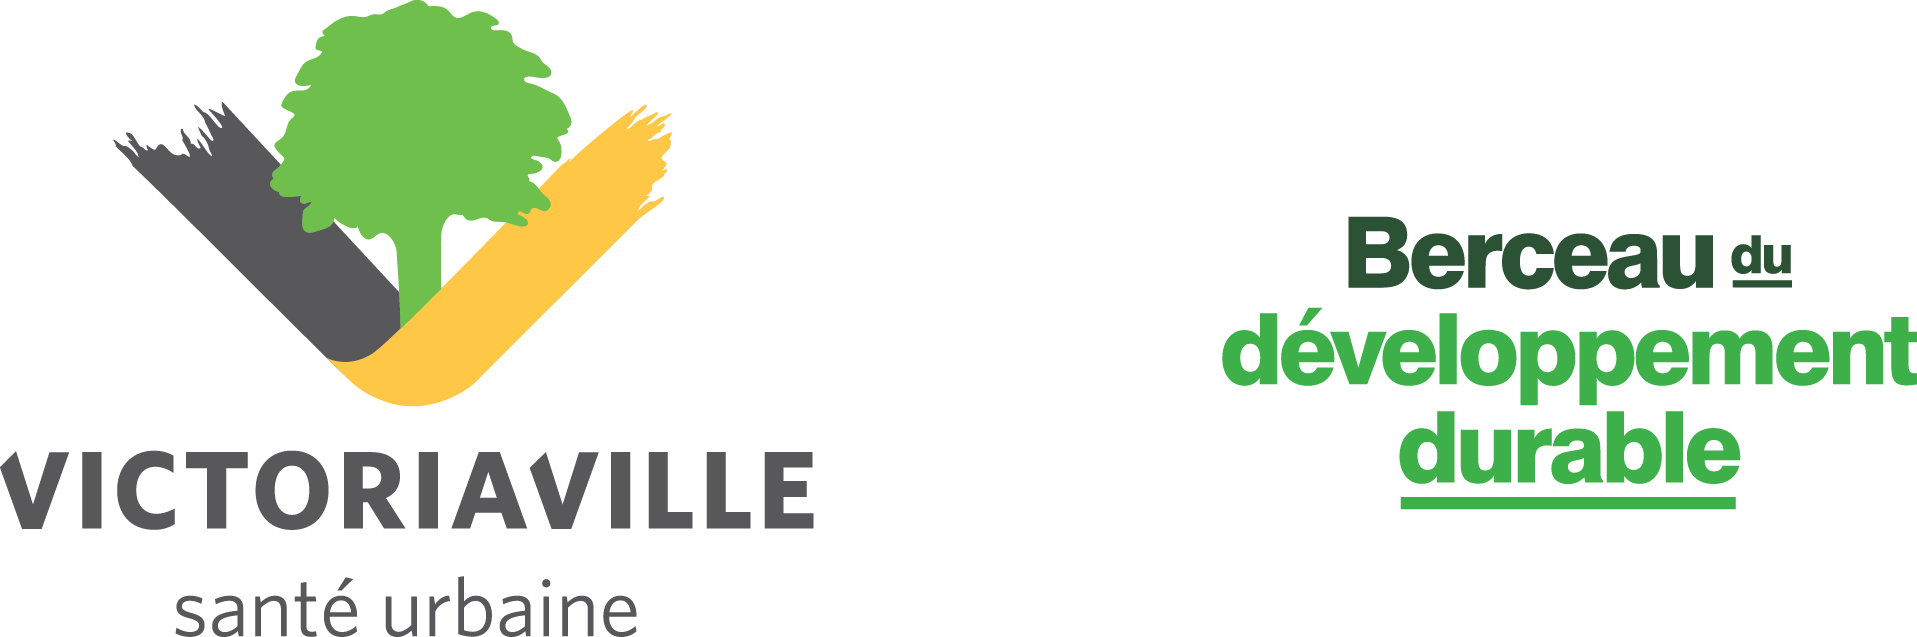 Victoriaville_berceau-du-developpement-durable